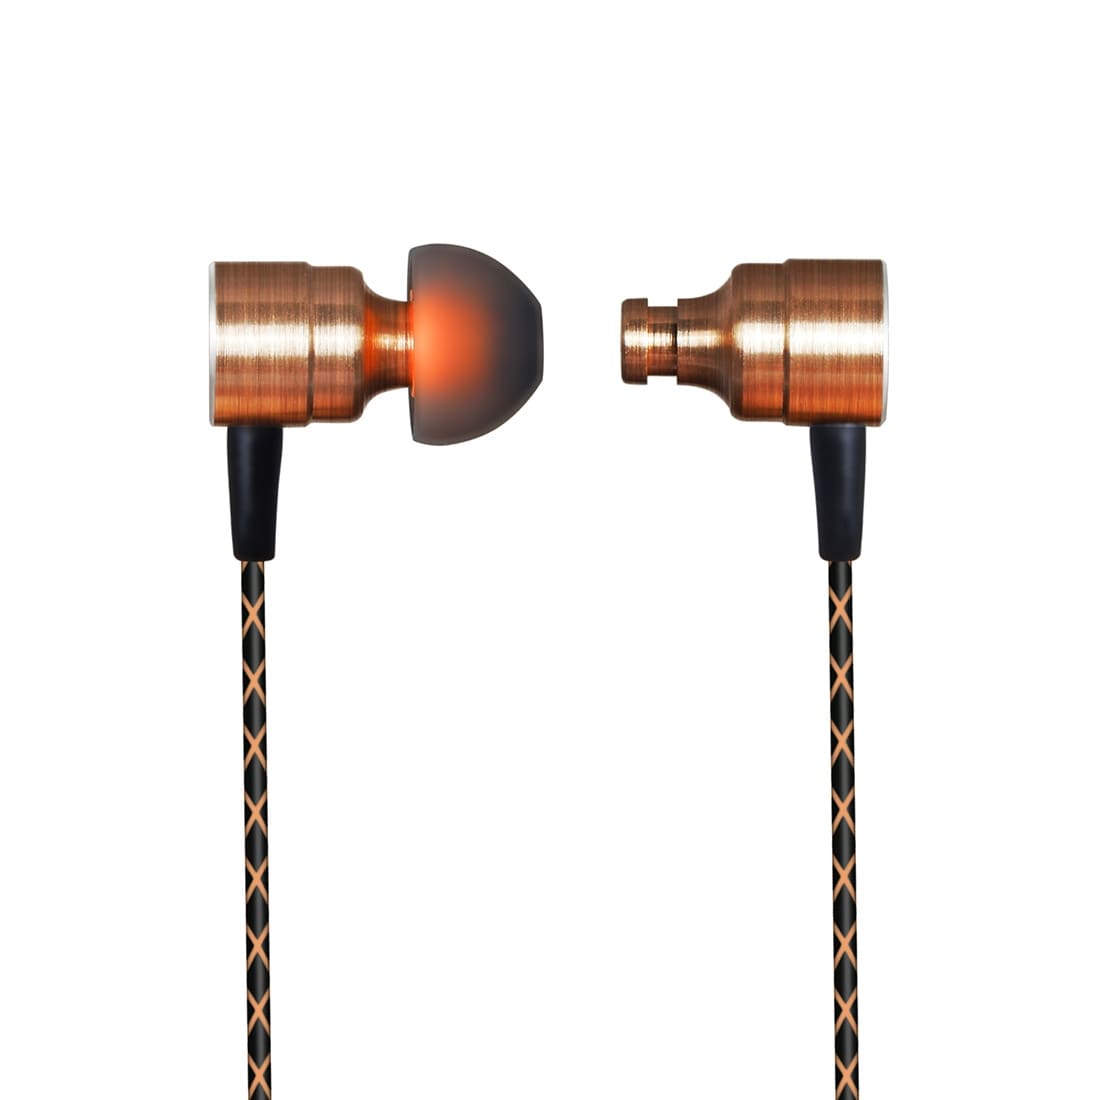 PLEXTONE Earphone In-ear headset magneetti kaulanauhalla